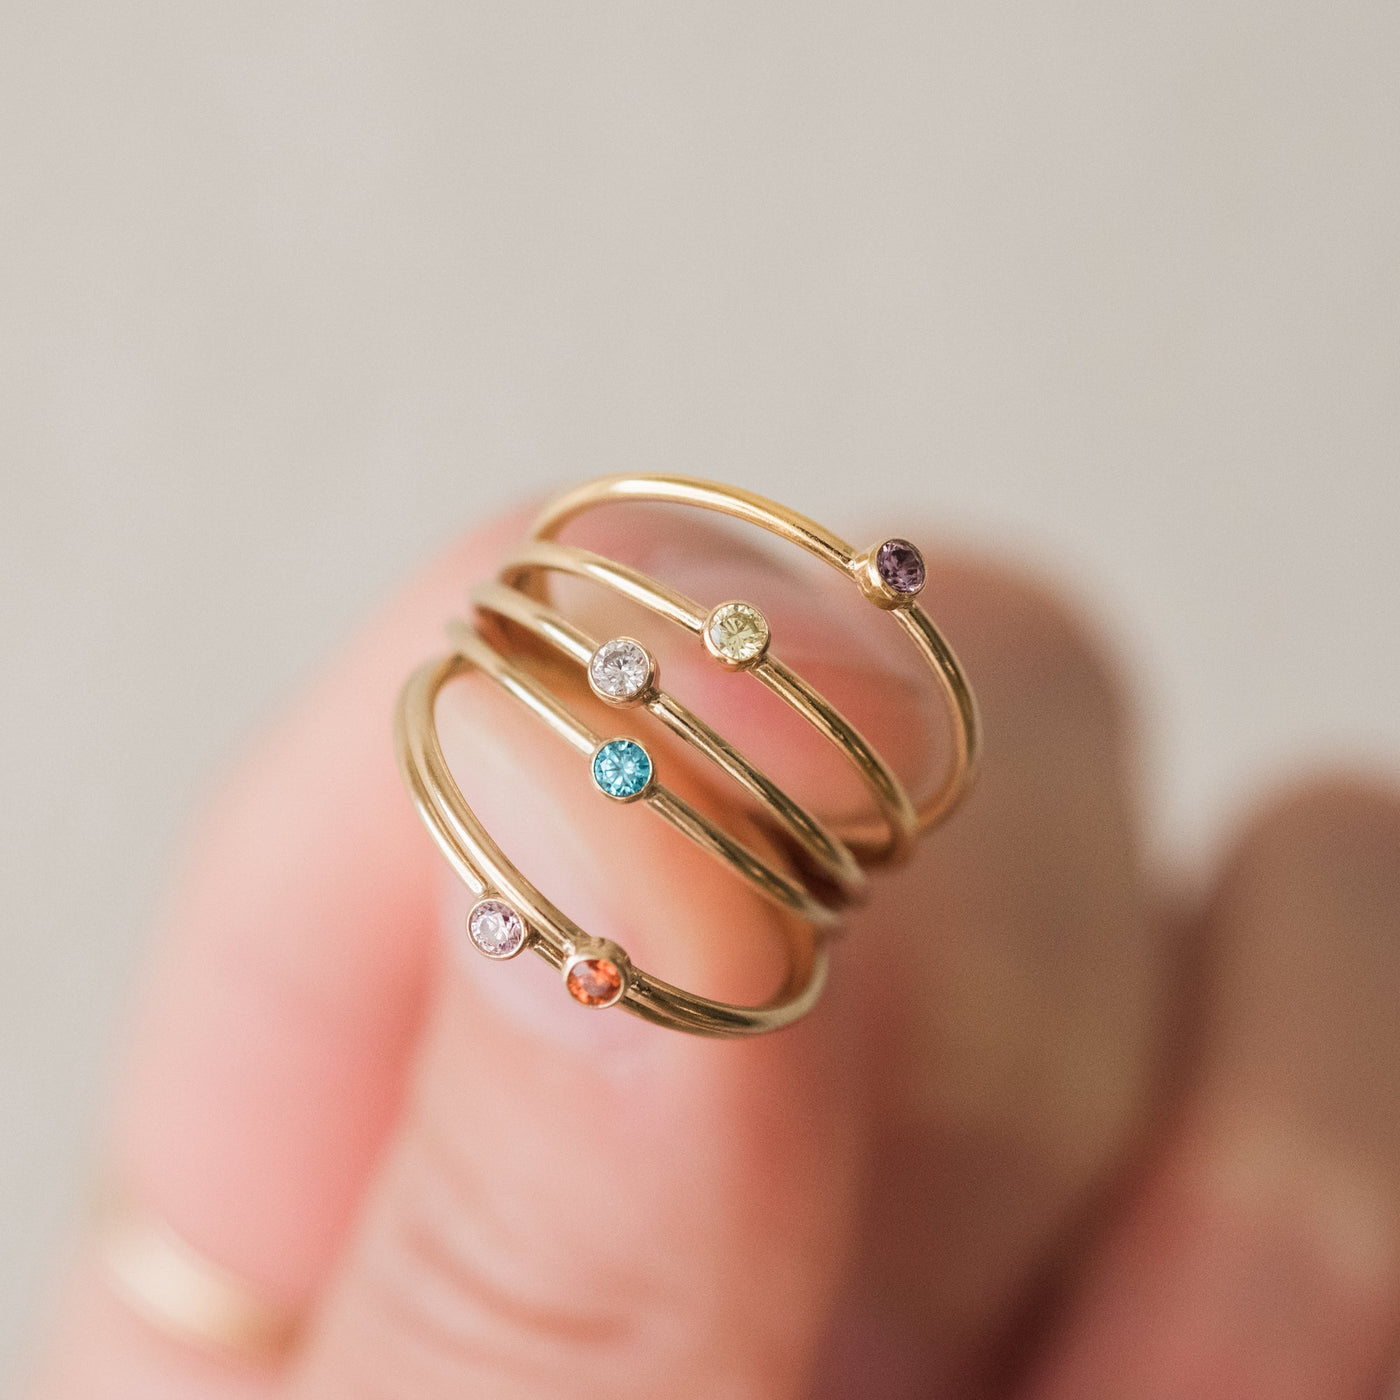 February Birthstone Ring (Amethyst) | Simple & Dainty Jewelry